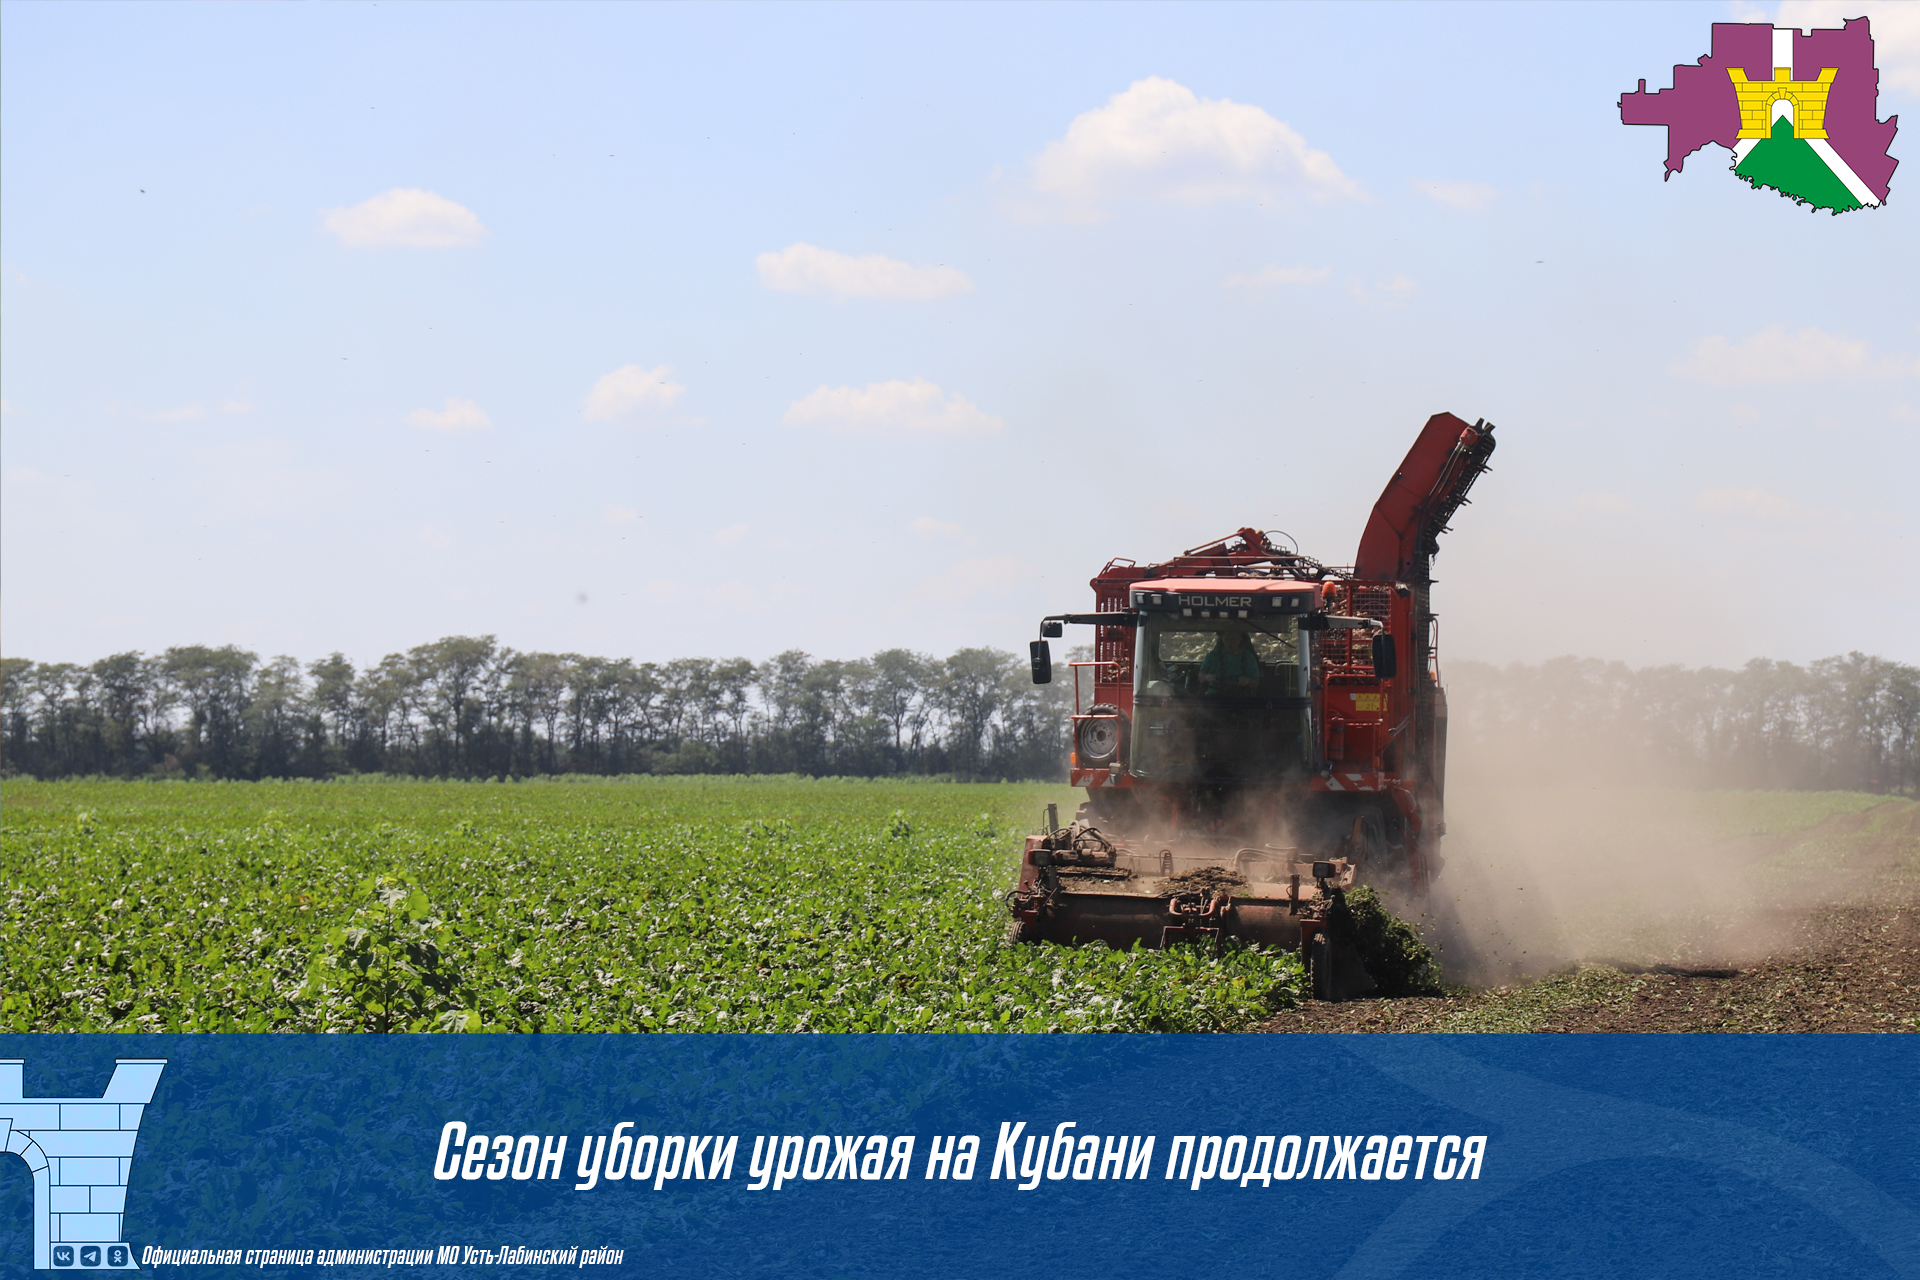 Сезон уборки урожая на Кубани продолжается